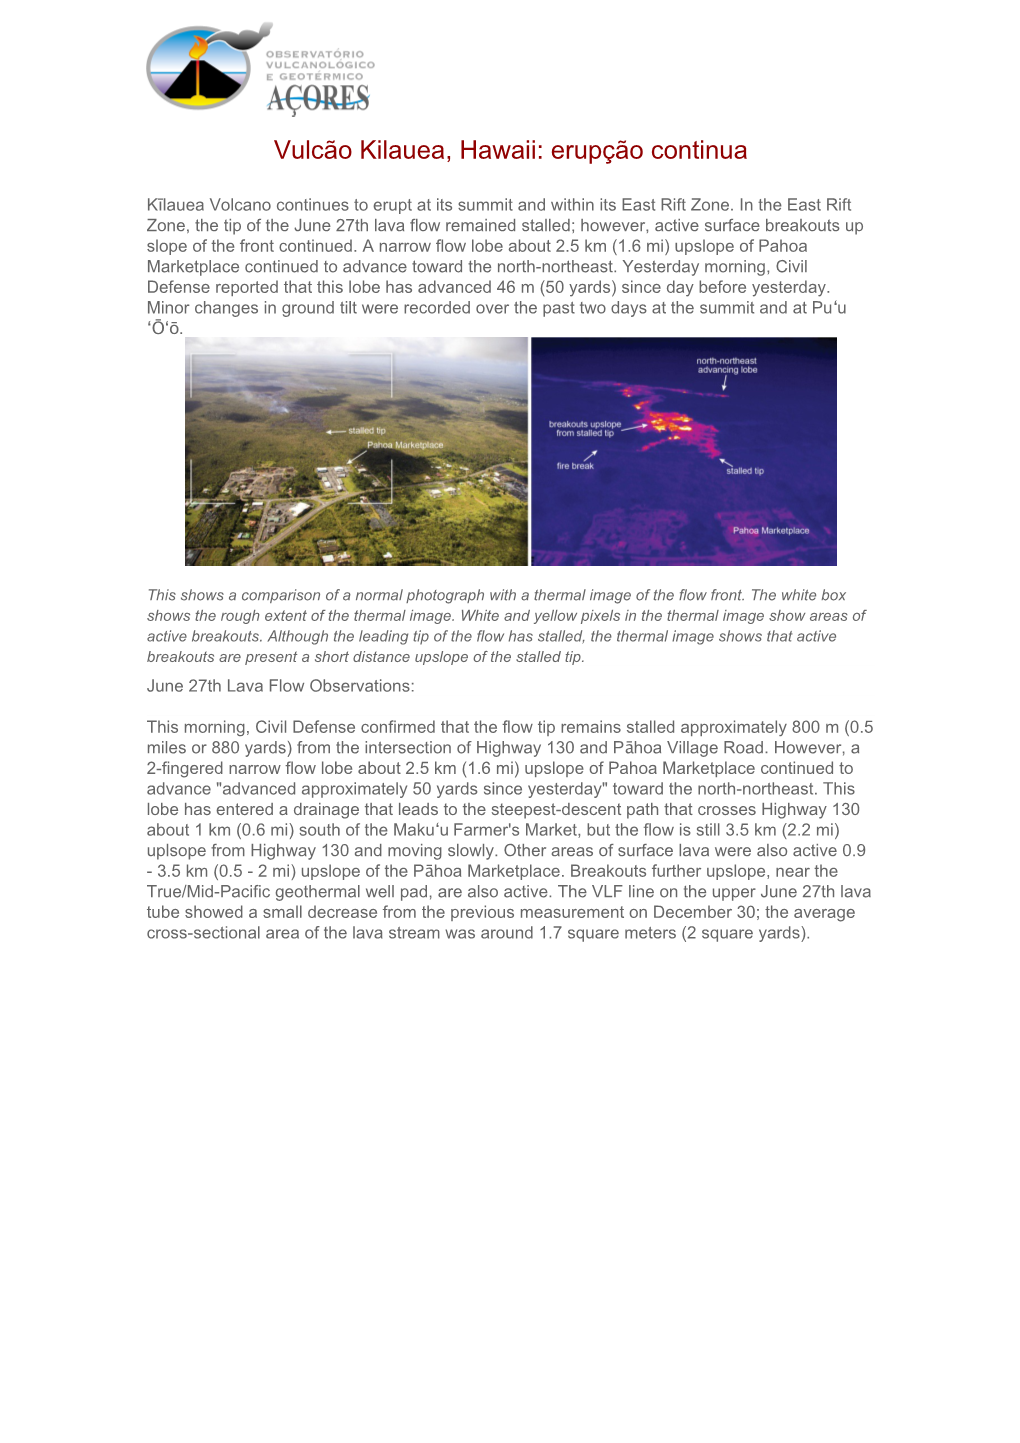 Vulcão Kilauea, Hawaii: Erupção Continua